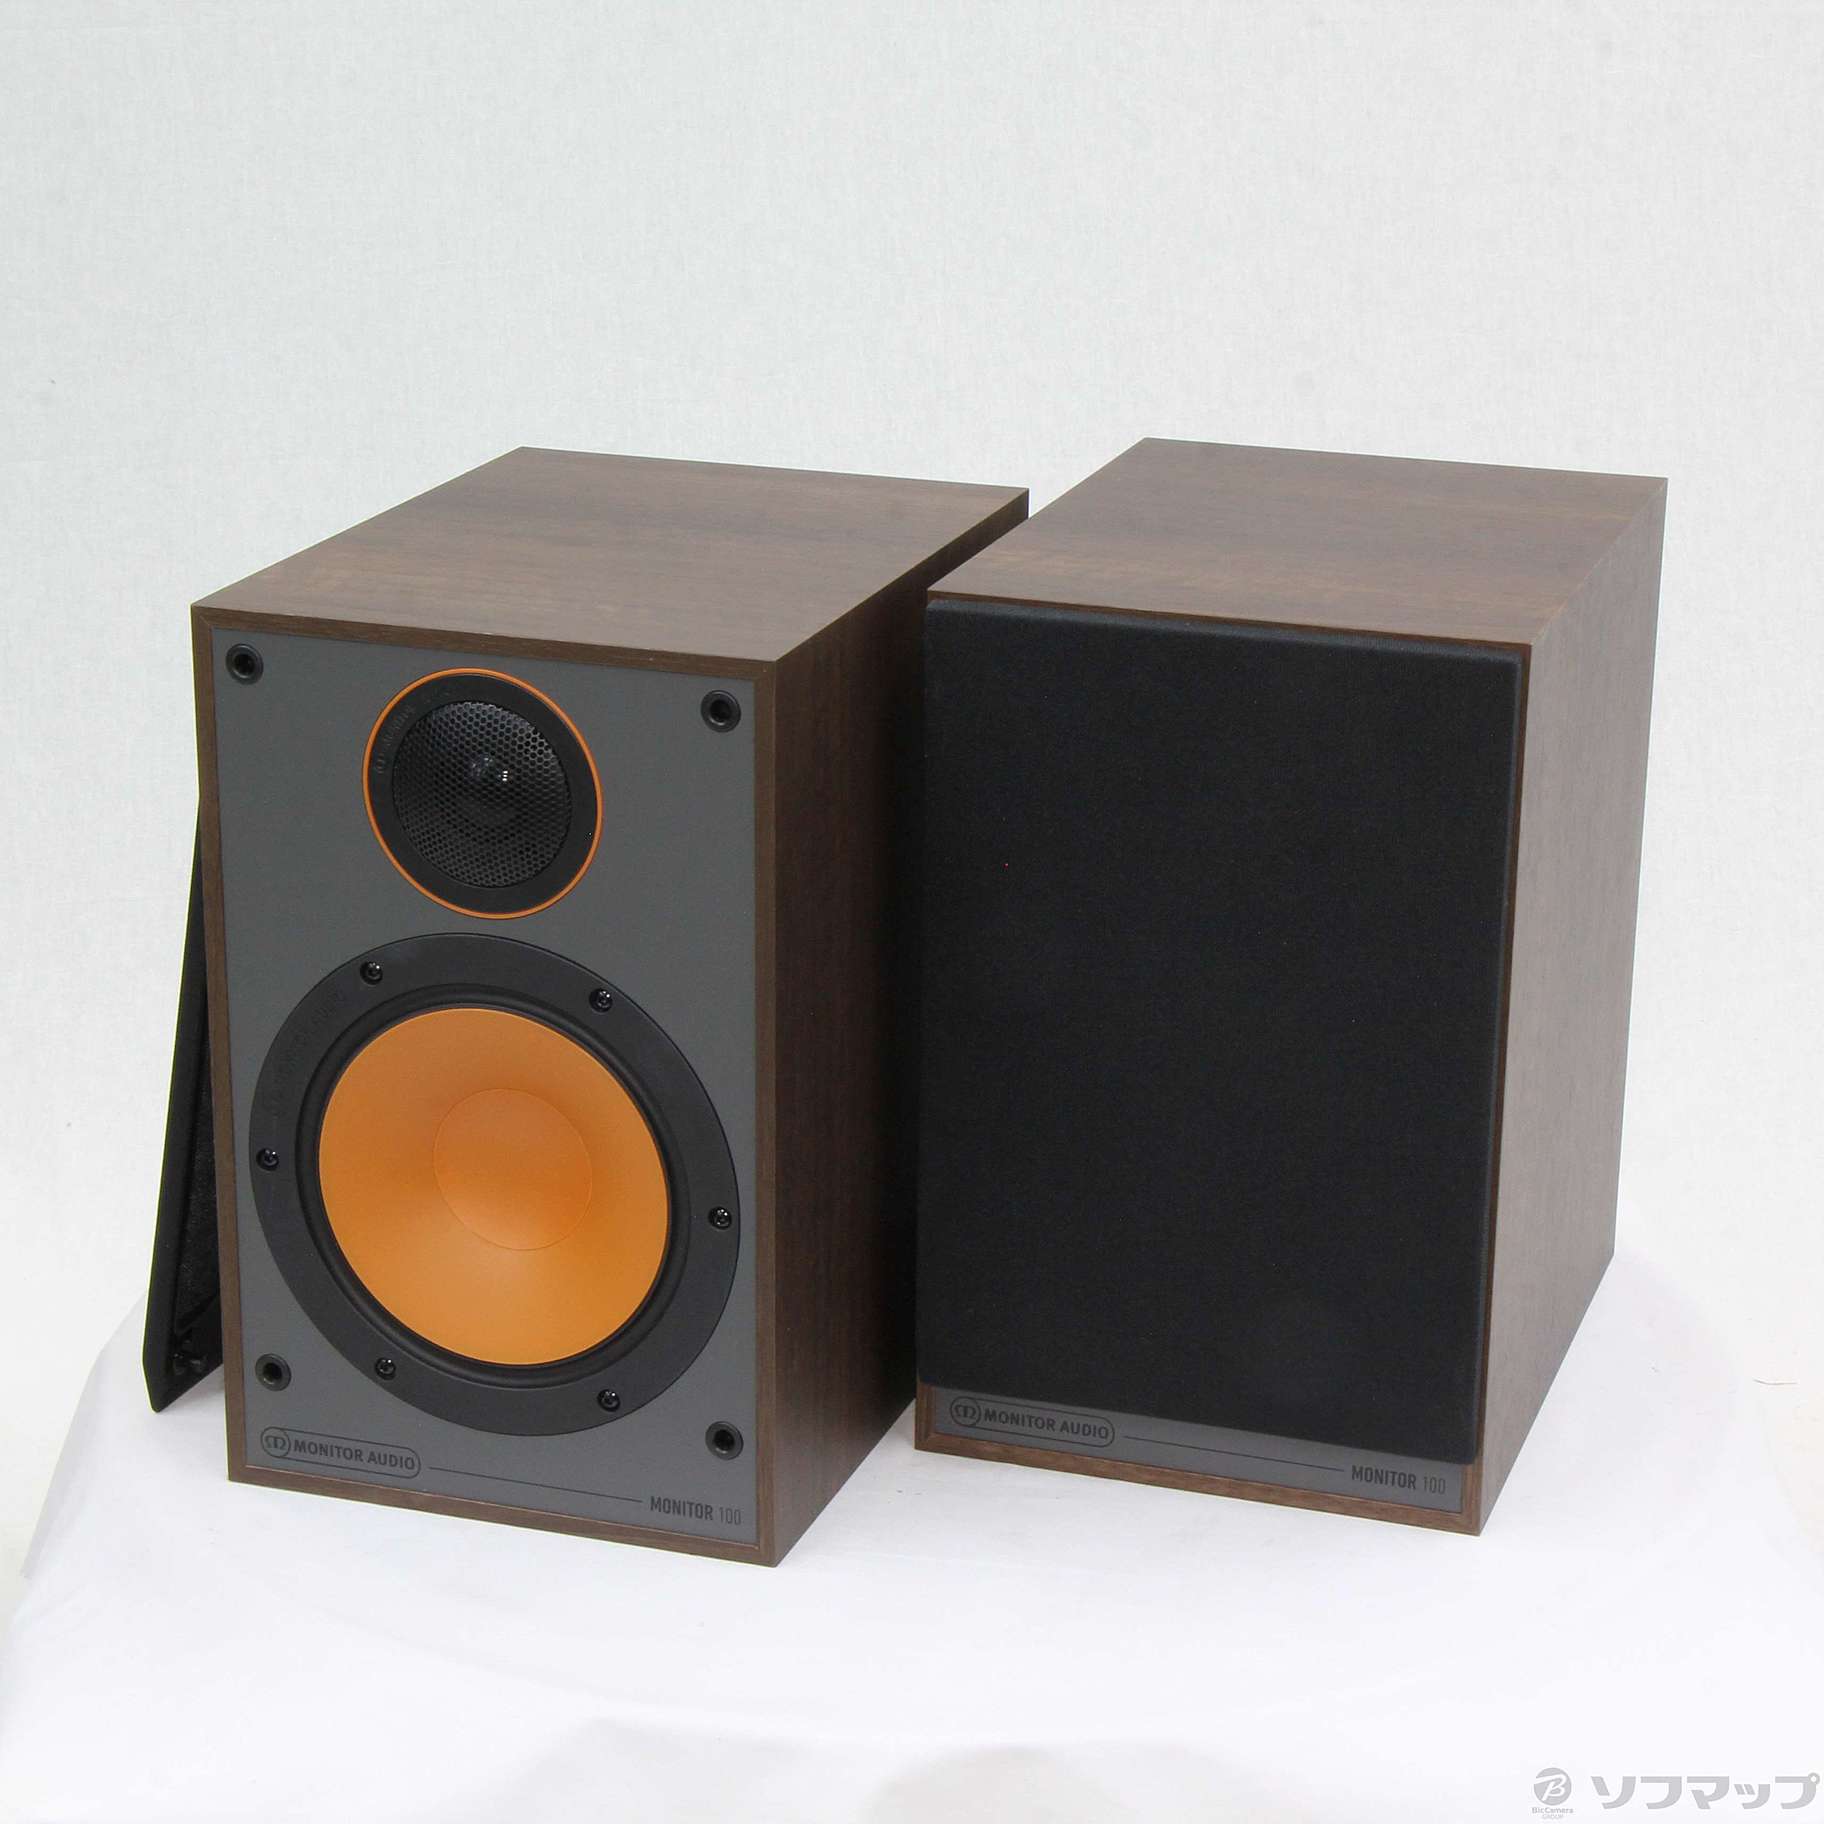 高品質最新作 Monitor Audio Monitor100 オレンジ モニターオーディオ uXoA6-m82635026151 